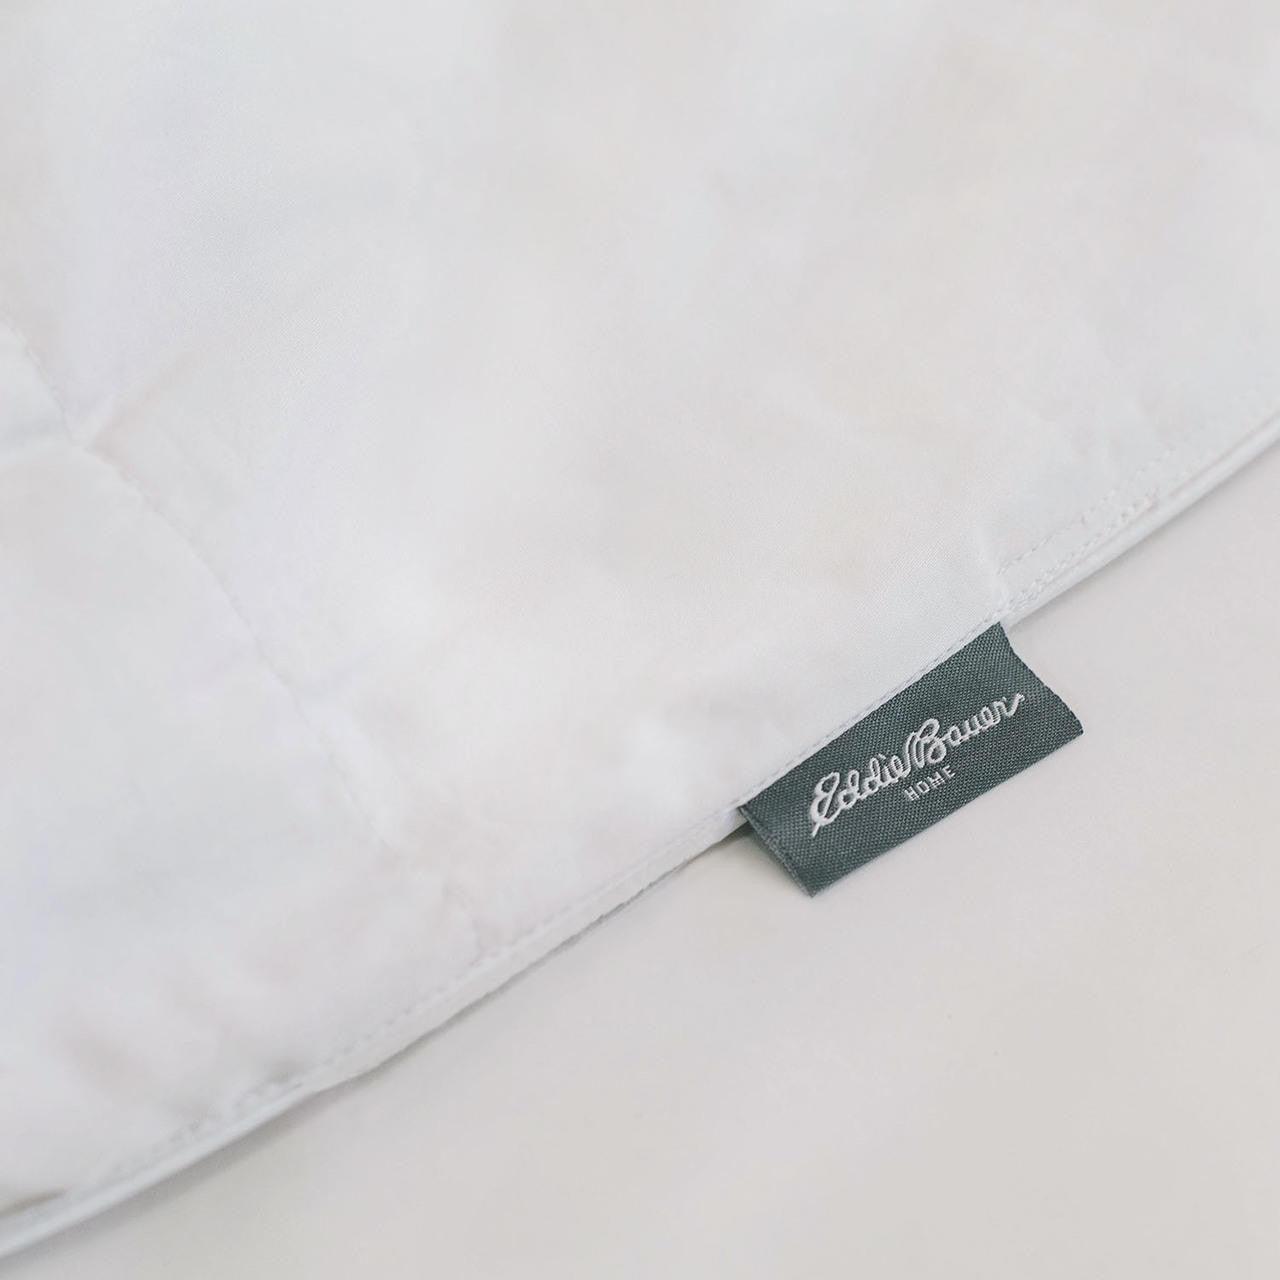 Eddie Bauer® 600 Fill Power Premium Down Comforter - Year-Round Warmth Over sized